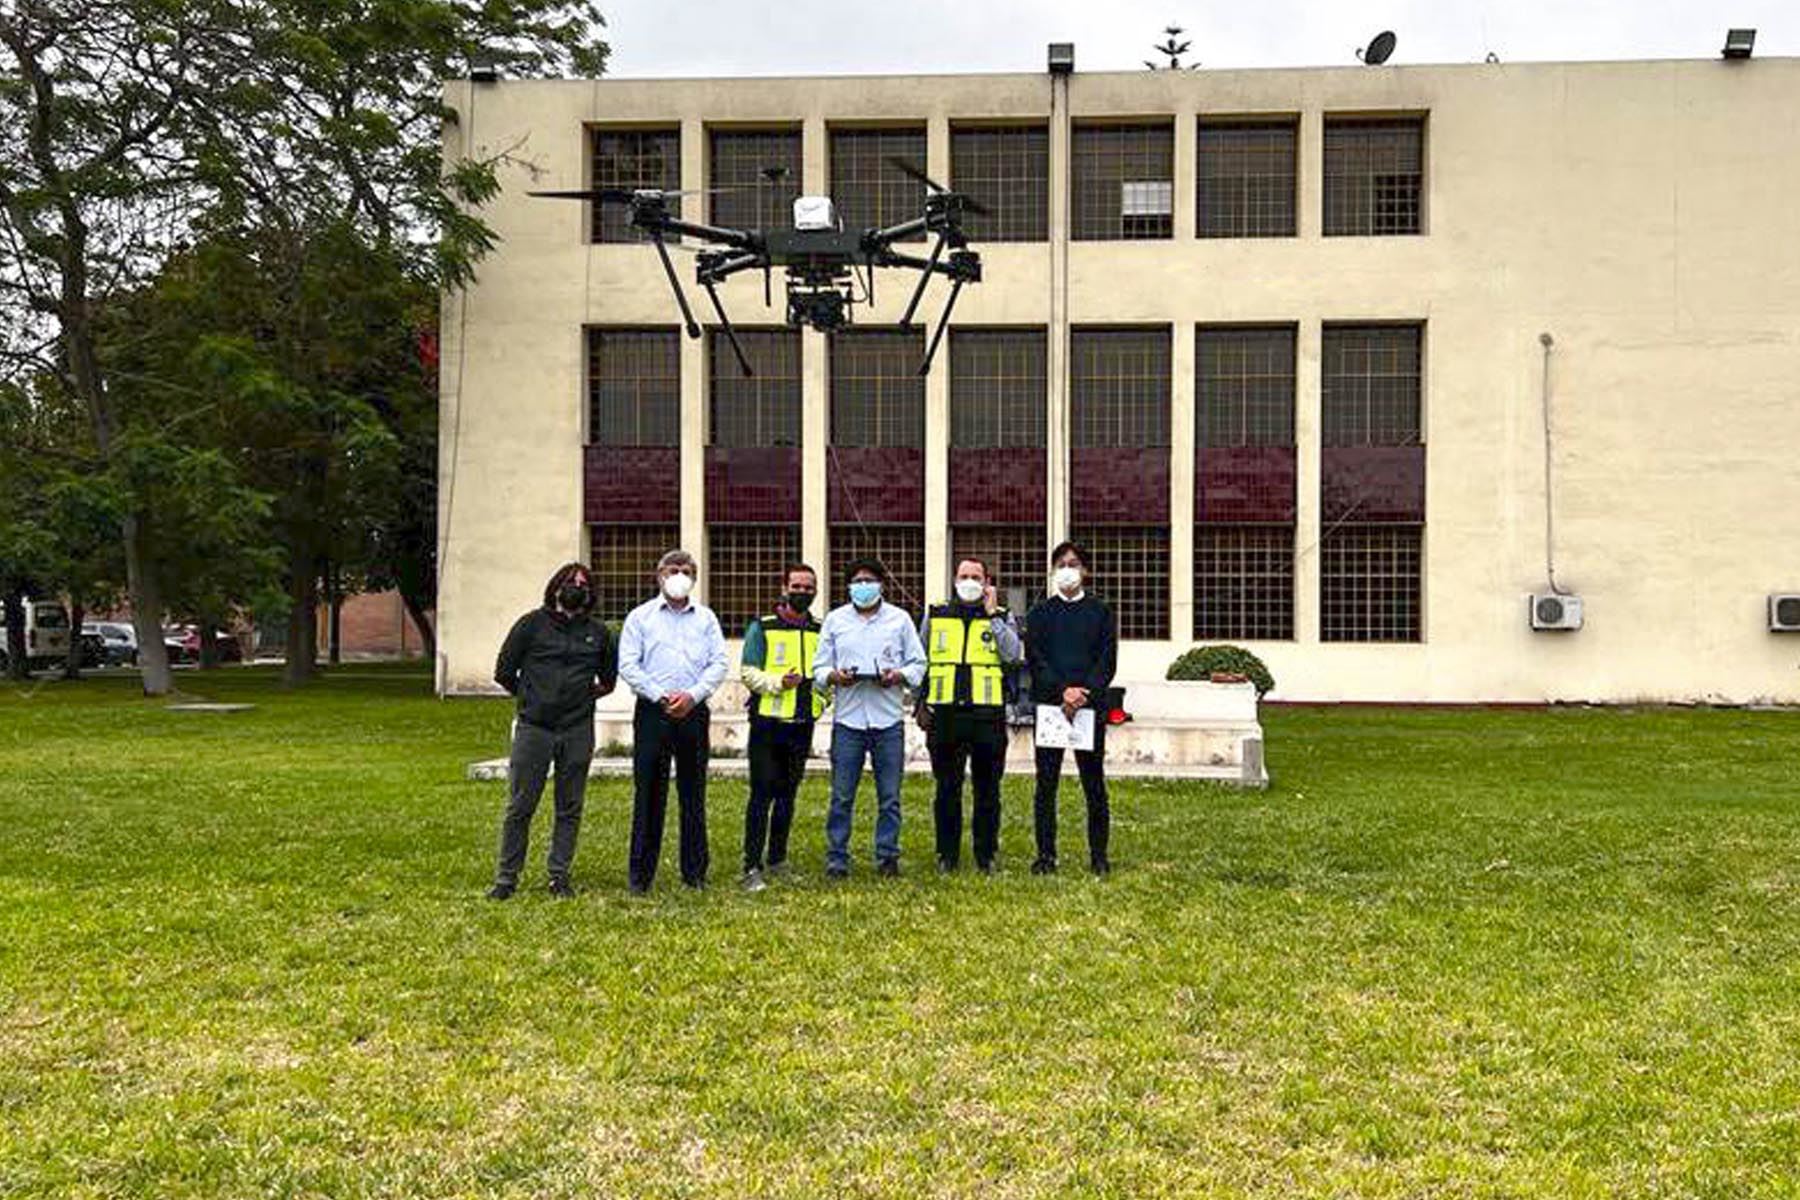 CISMID recibió un drone que será usado para el levantamiento de información tridimensional de las áreas de estudio del proyecto SATREPS.